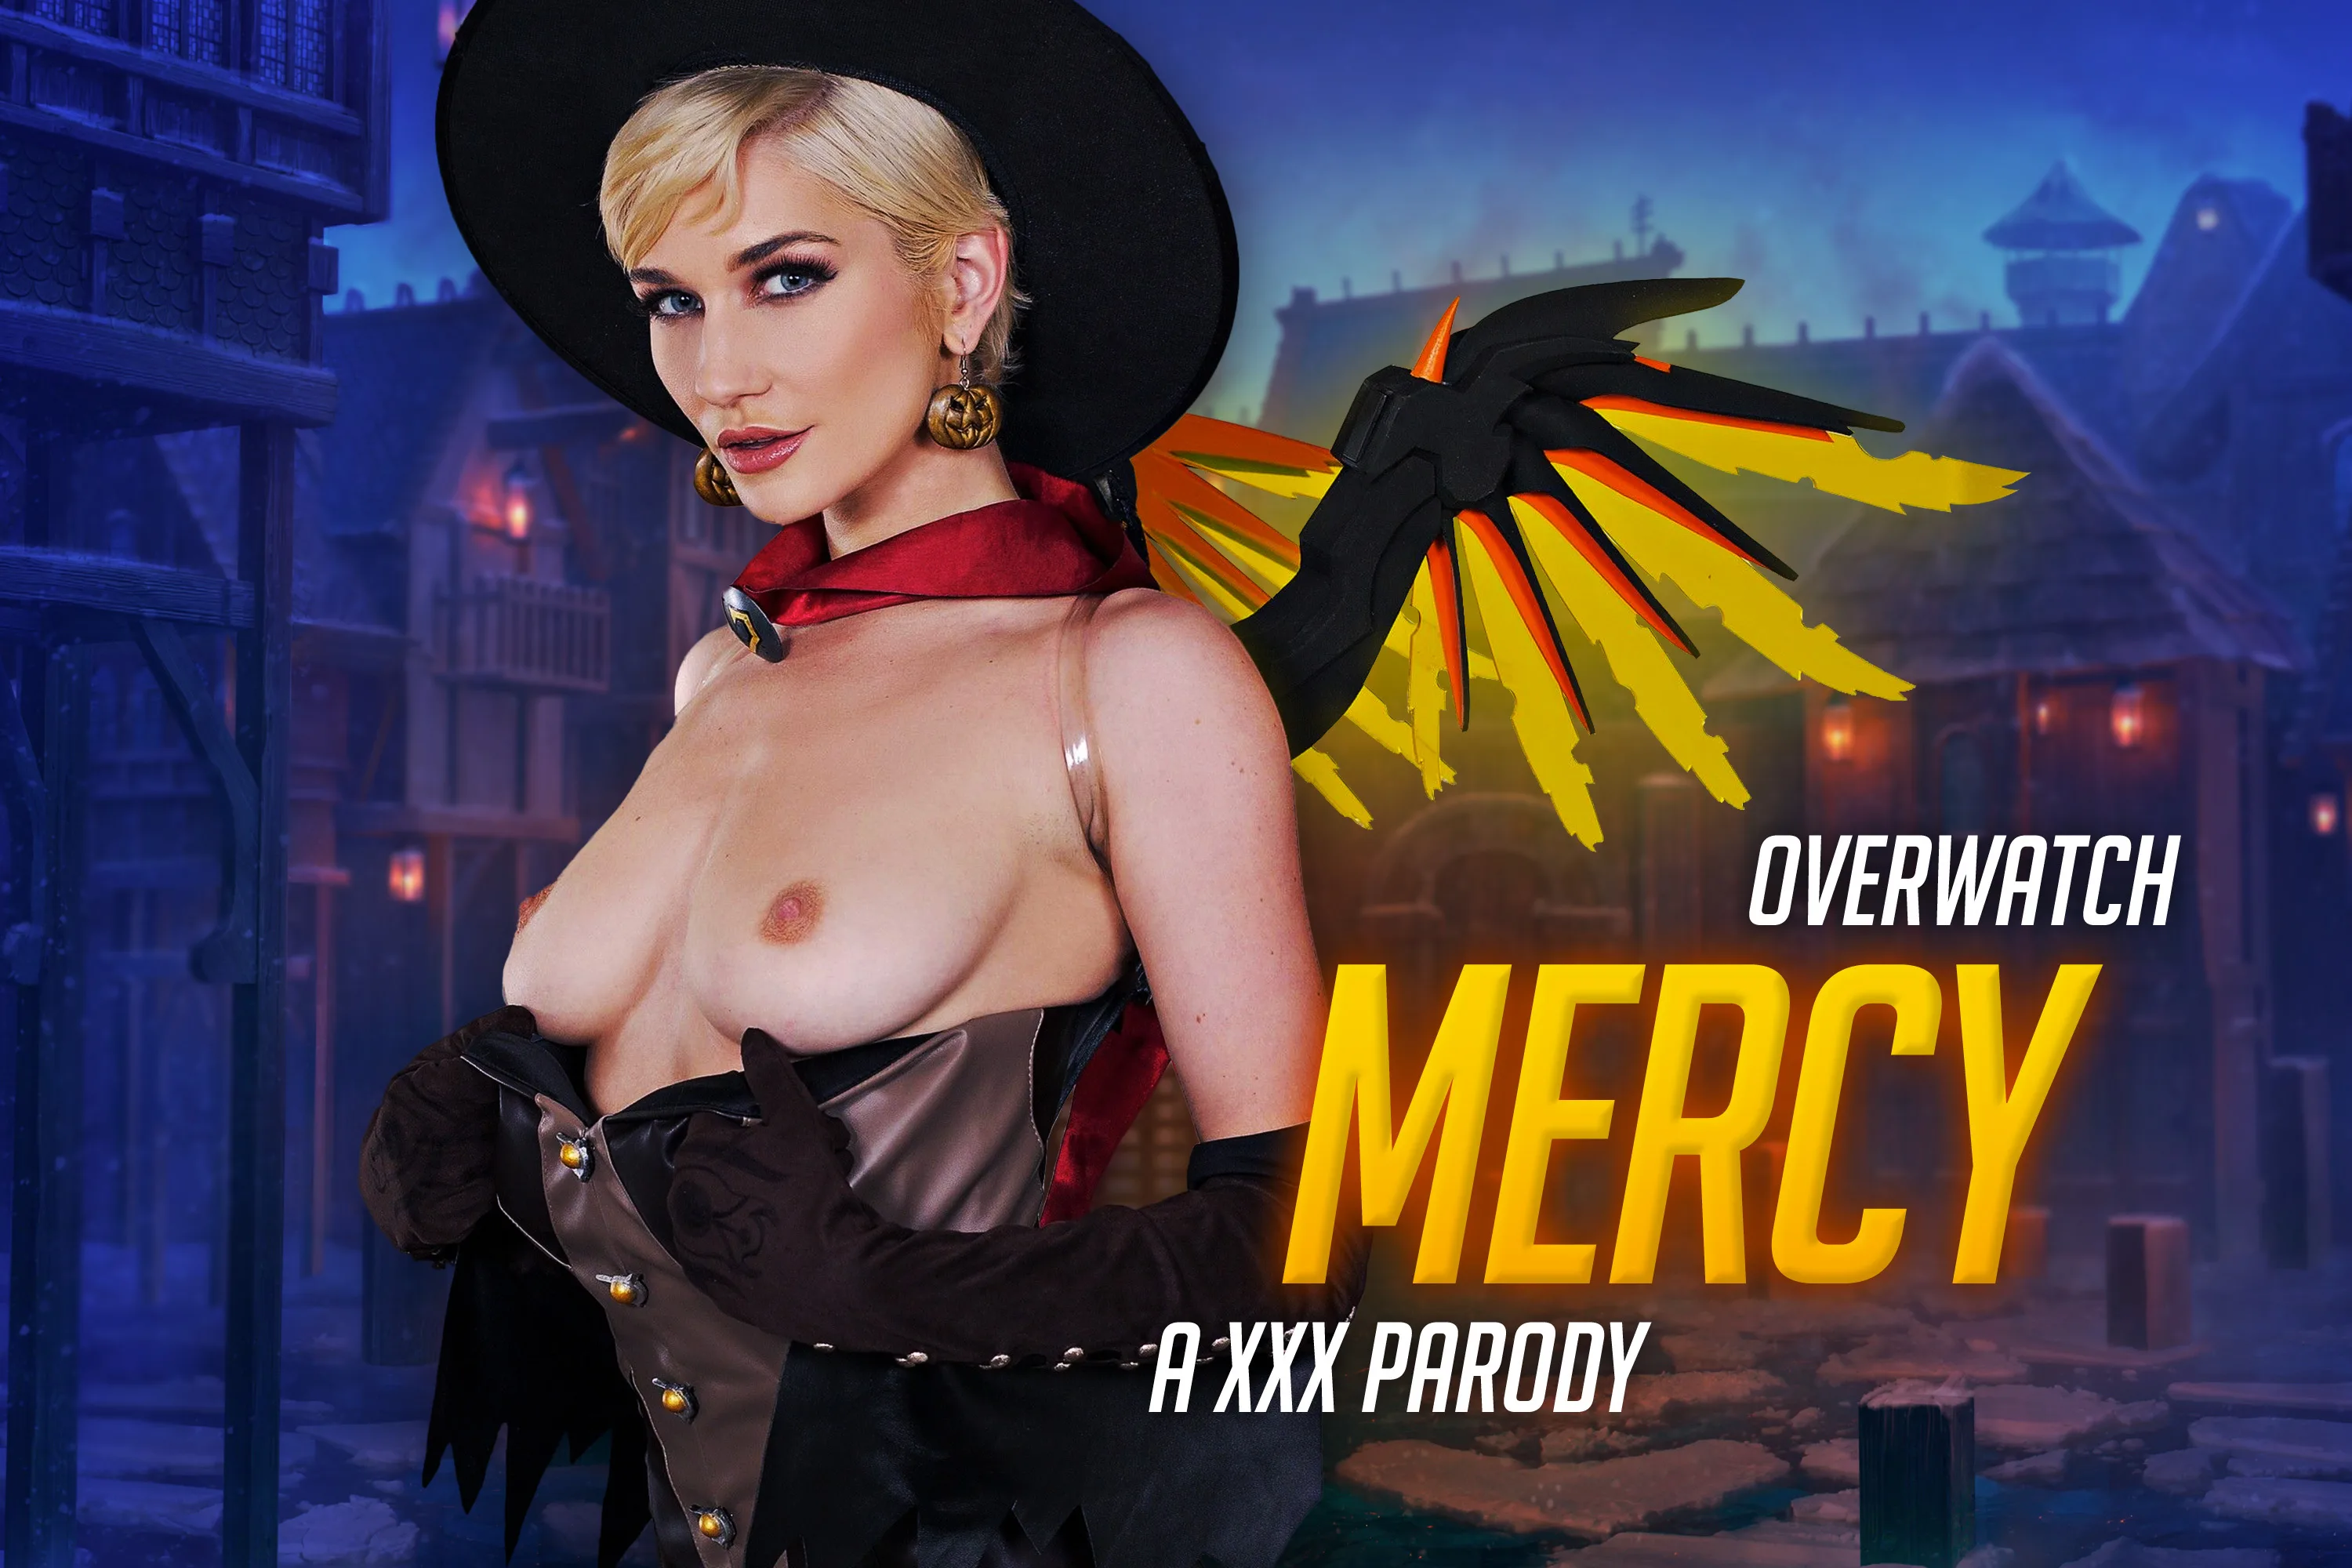 [2020-12-21] Overwatch: Mercy A XXX Parody - VRCosplayX